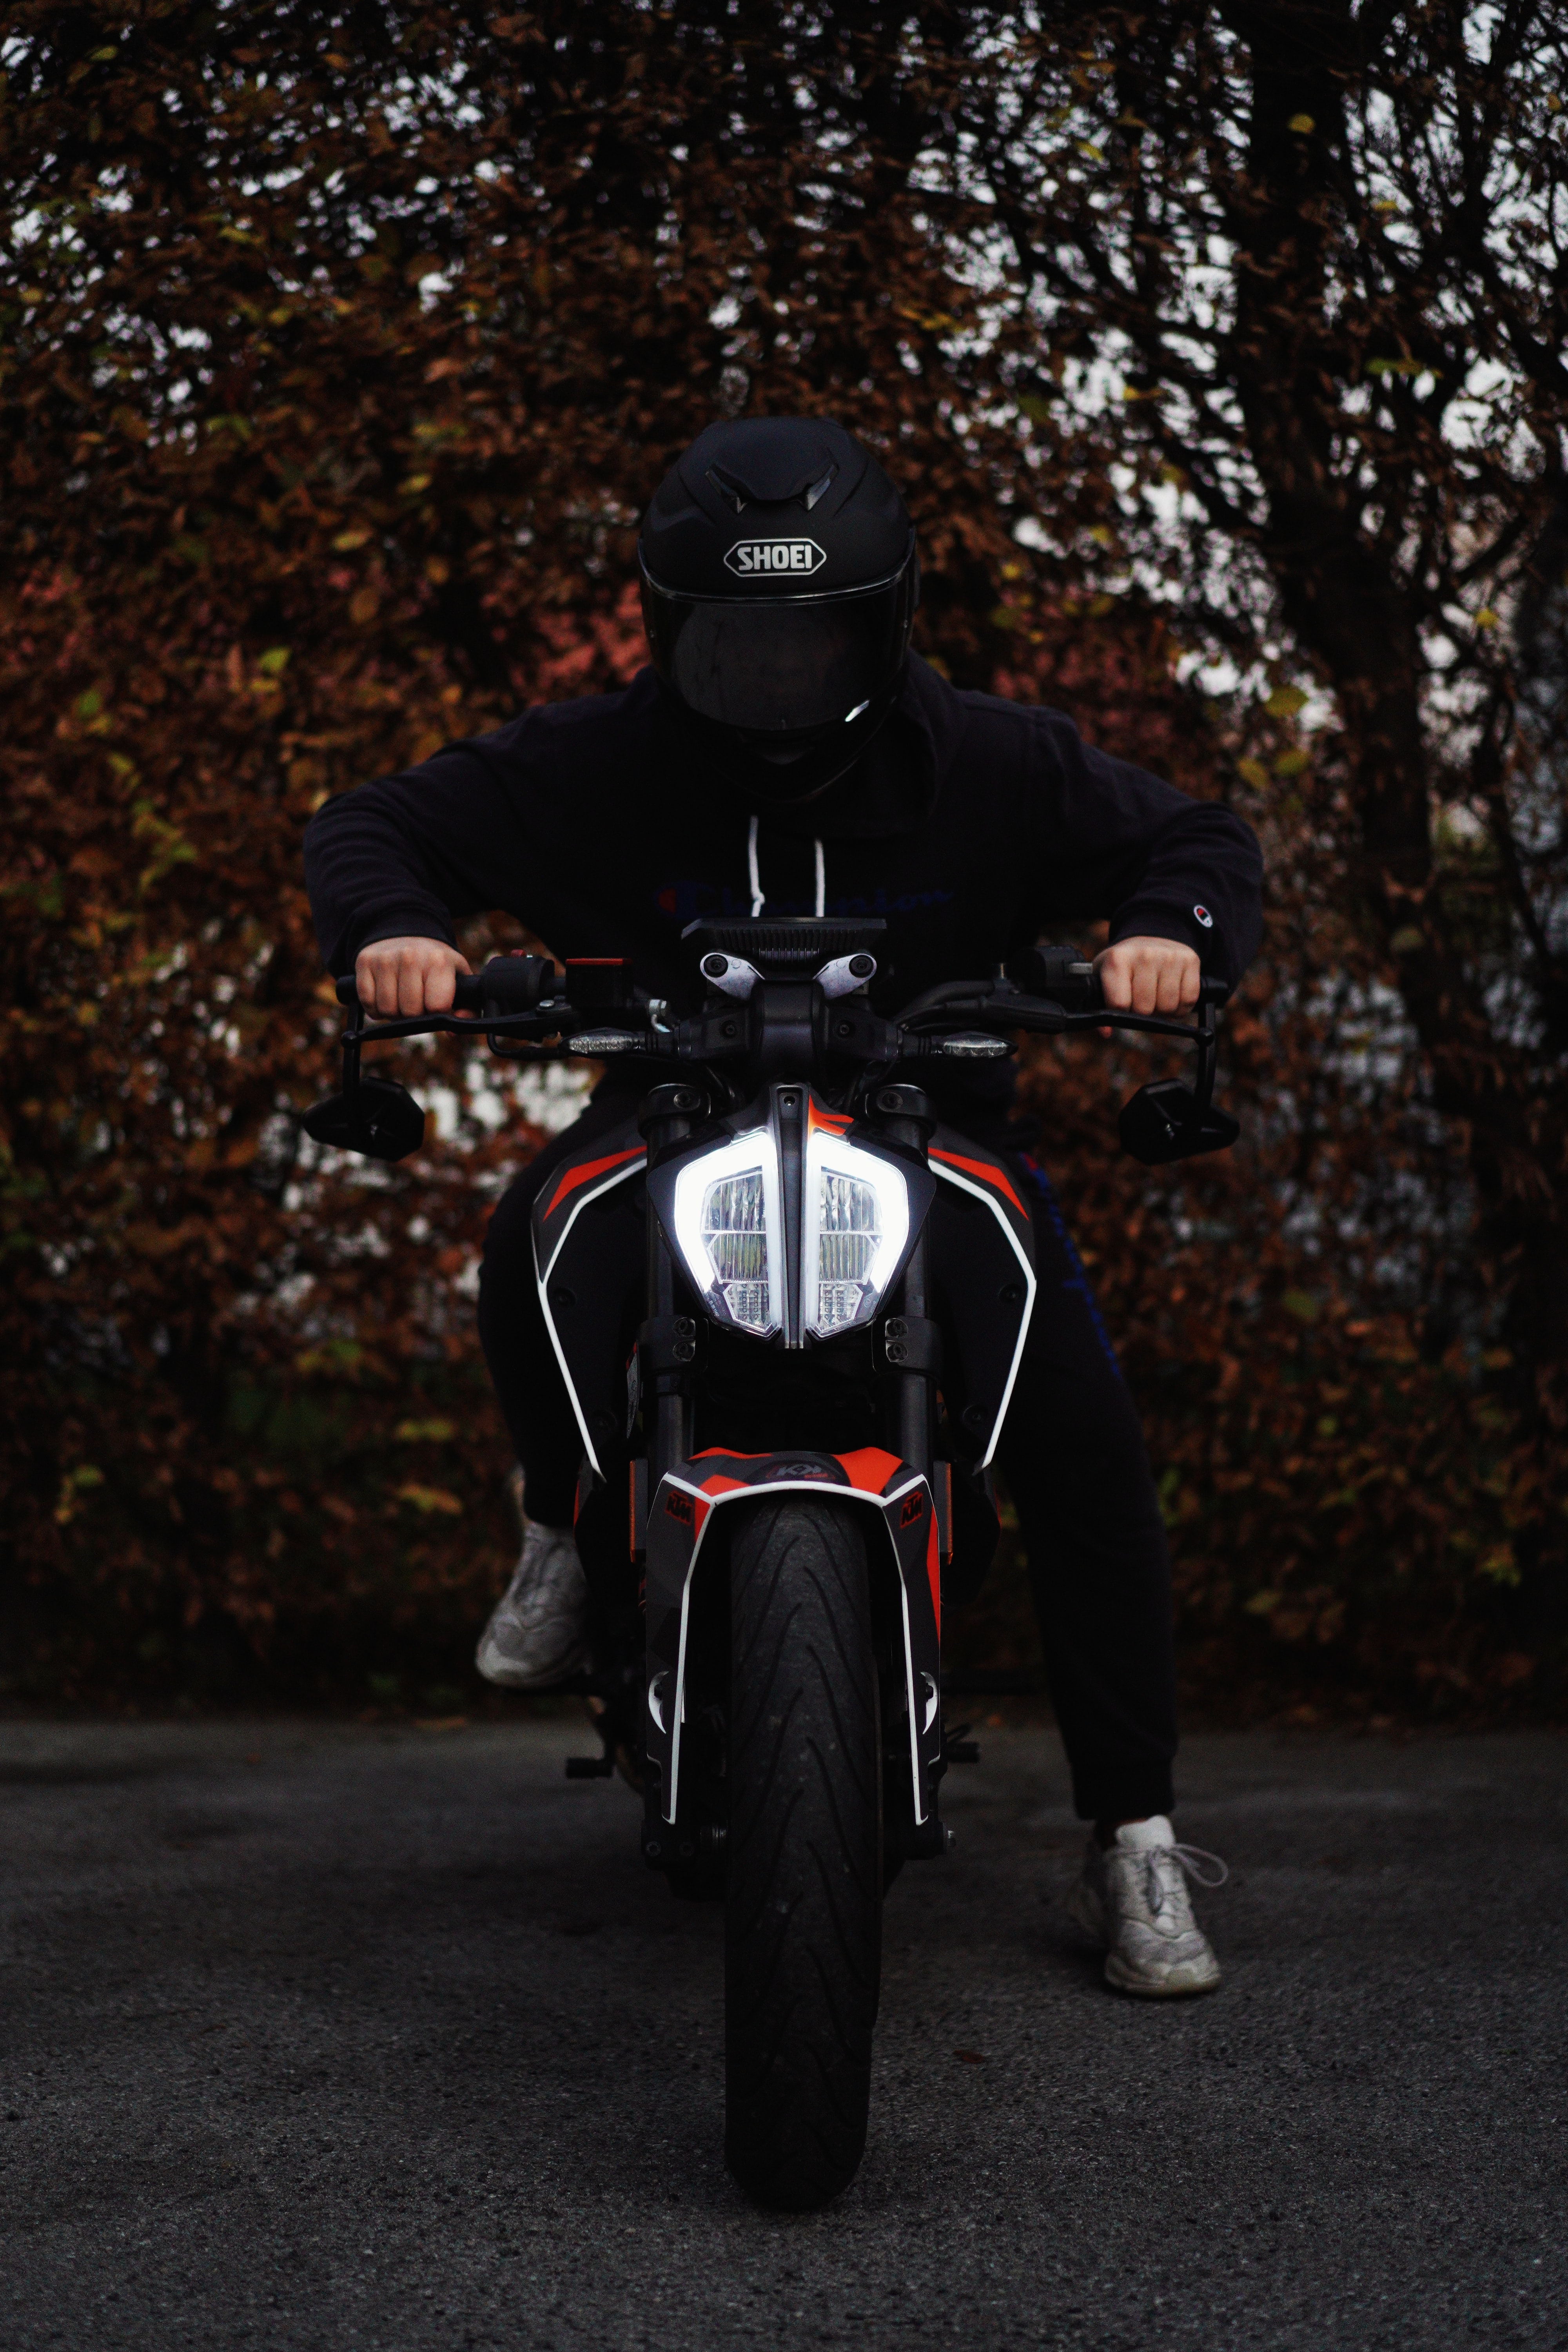 bike, motorcycles, black, motorcyclist, helmet, motorcycle iphone wallpaper